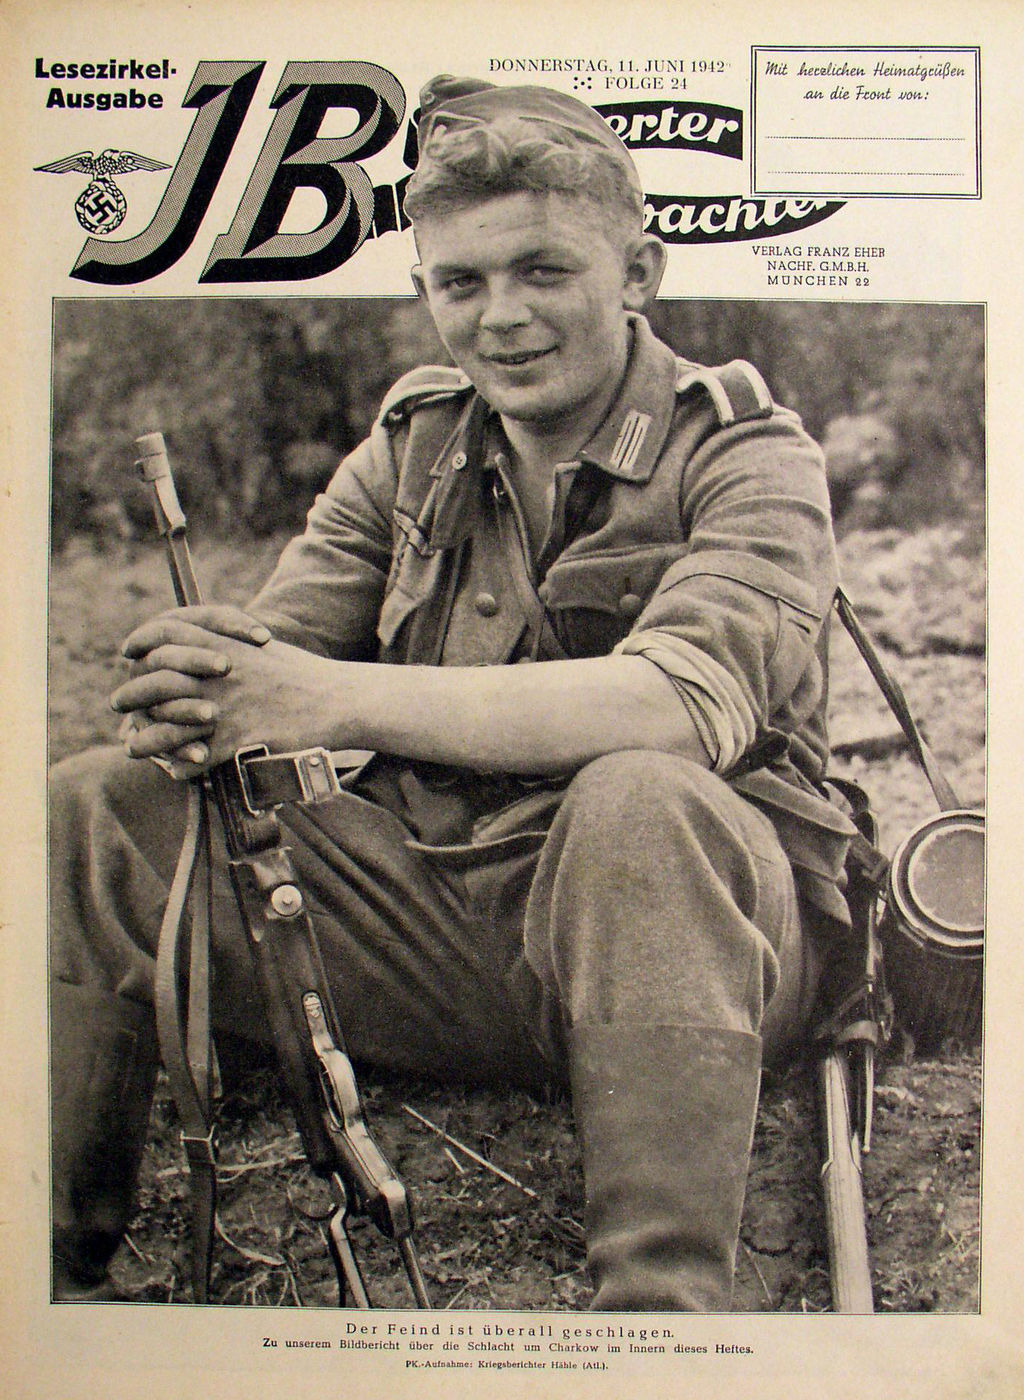 Exponat: Zeitschrift: "Illustrierter Beobachter" zur Schlacht um Charkow, 1942